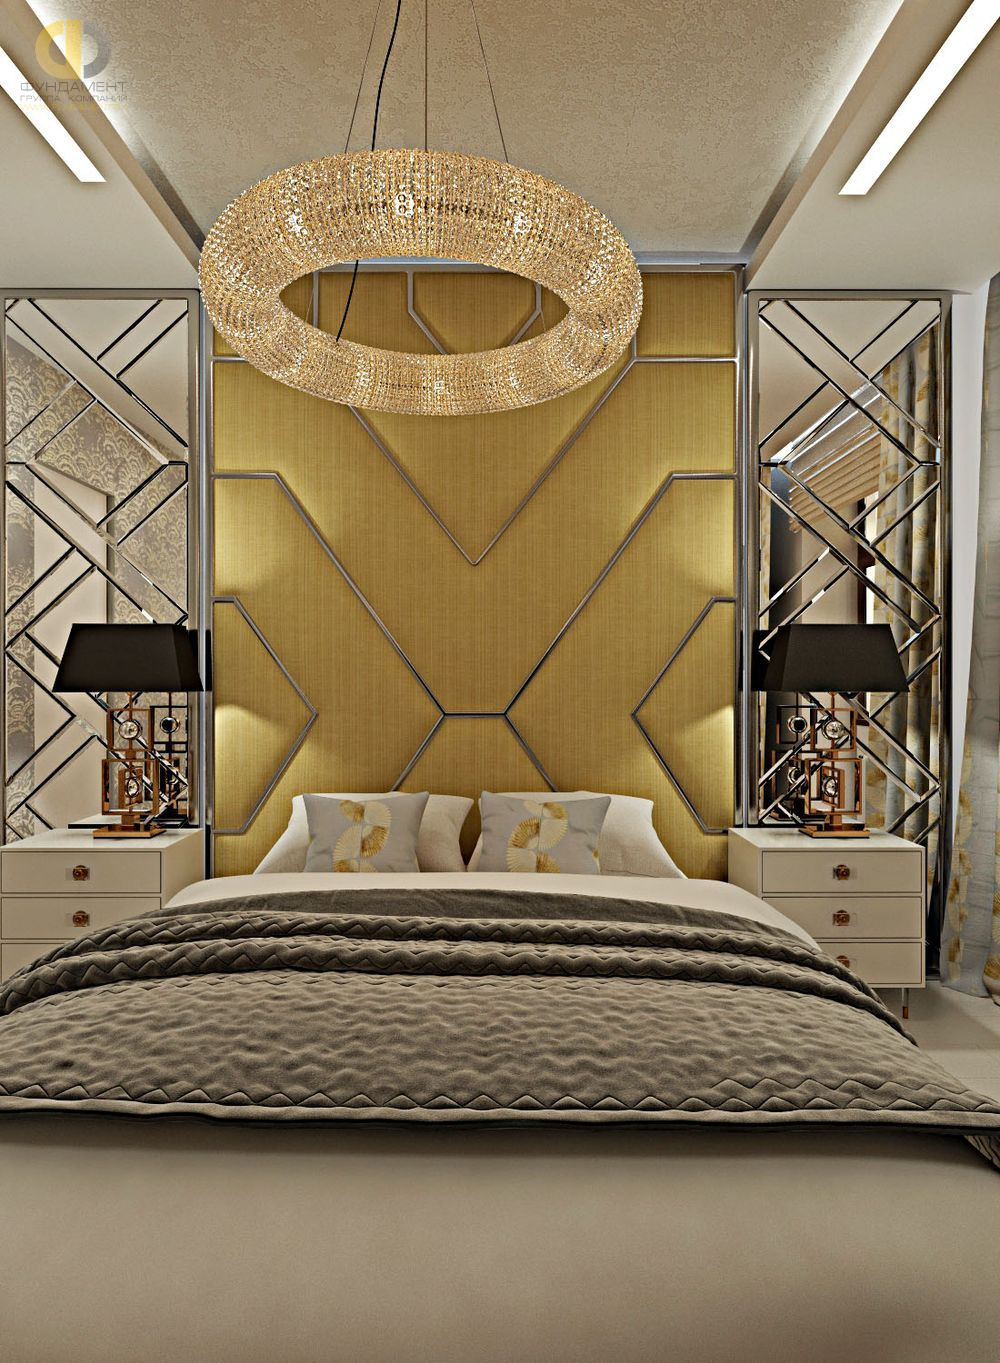 Спальня в стиле дизайна арт-деко (ар-деко) по адресу г. Москва, ул. Серпуховской Вал, д. 19/21, 2019 года